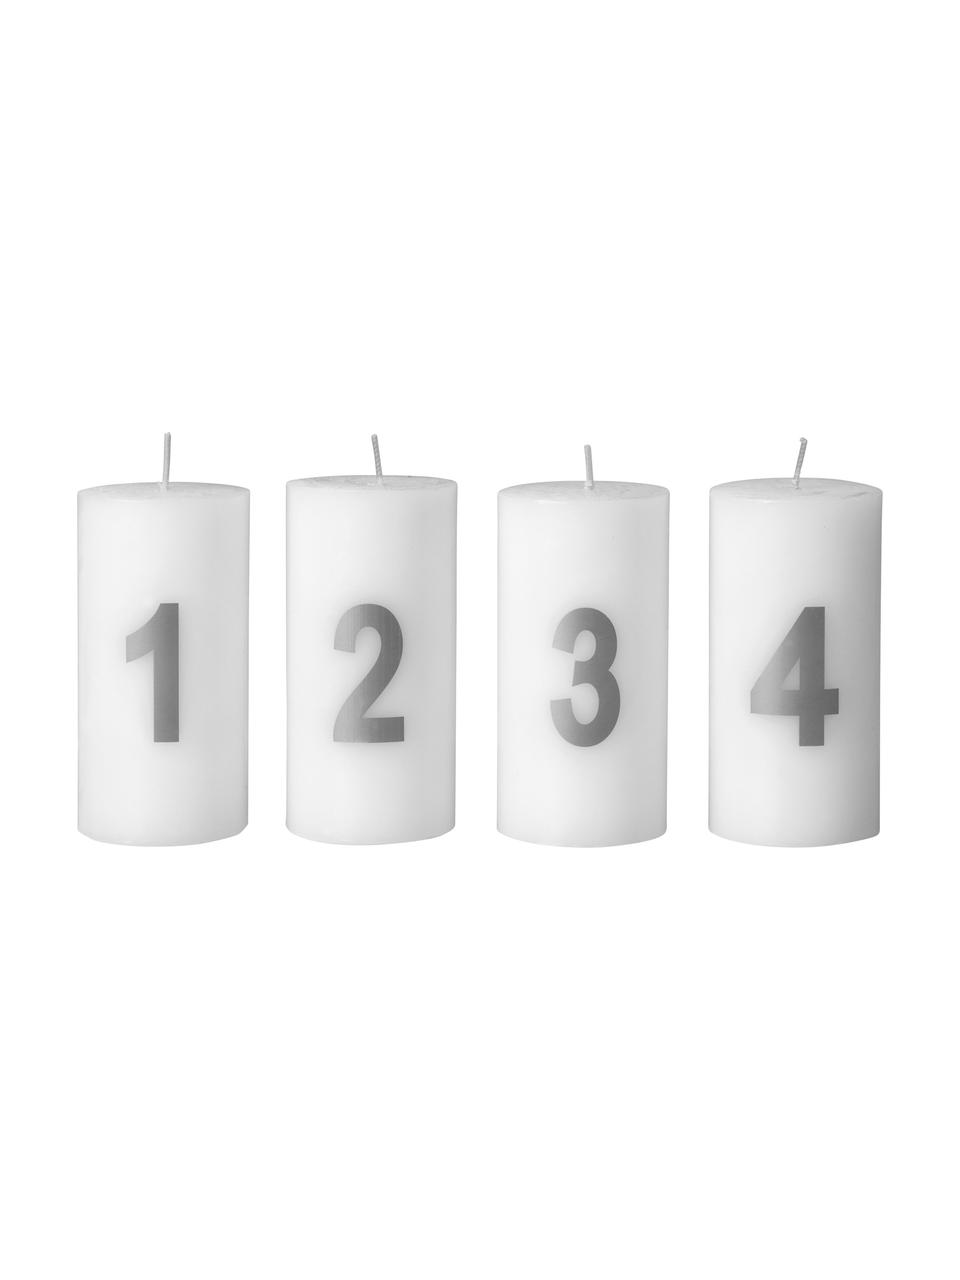 Súprava adventných sviečok Avvento, 4 diely, Teplá biela, odtiene striebornej